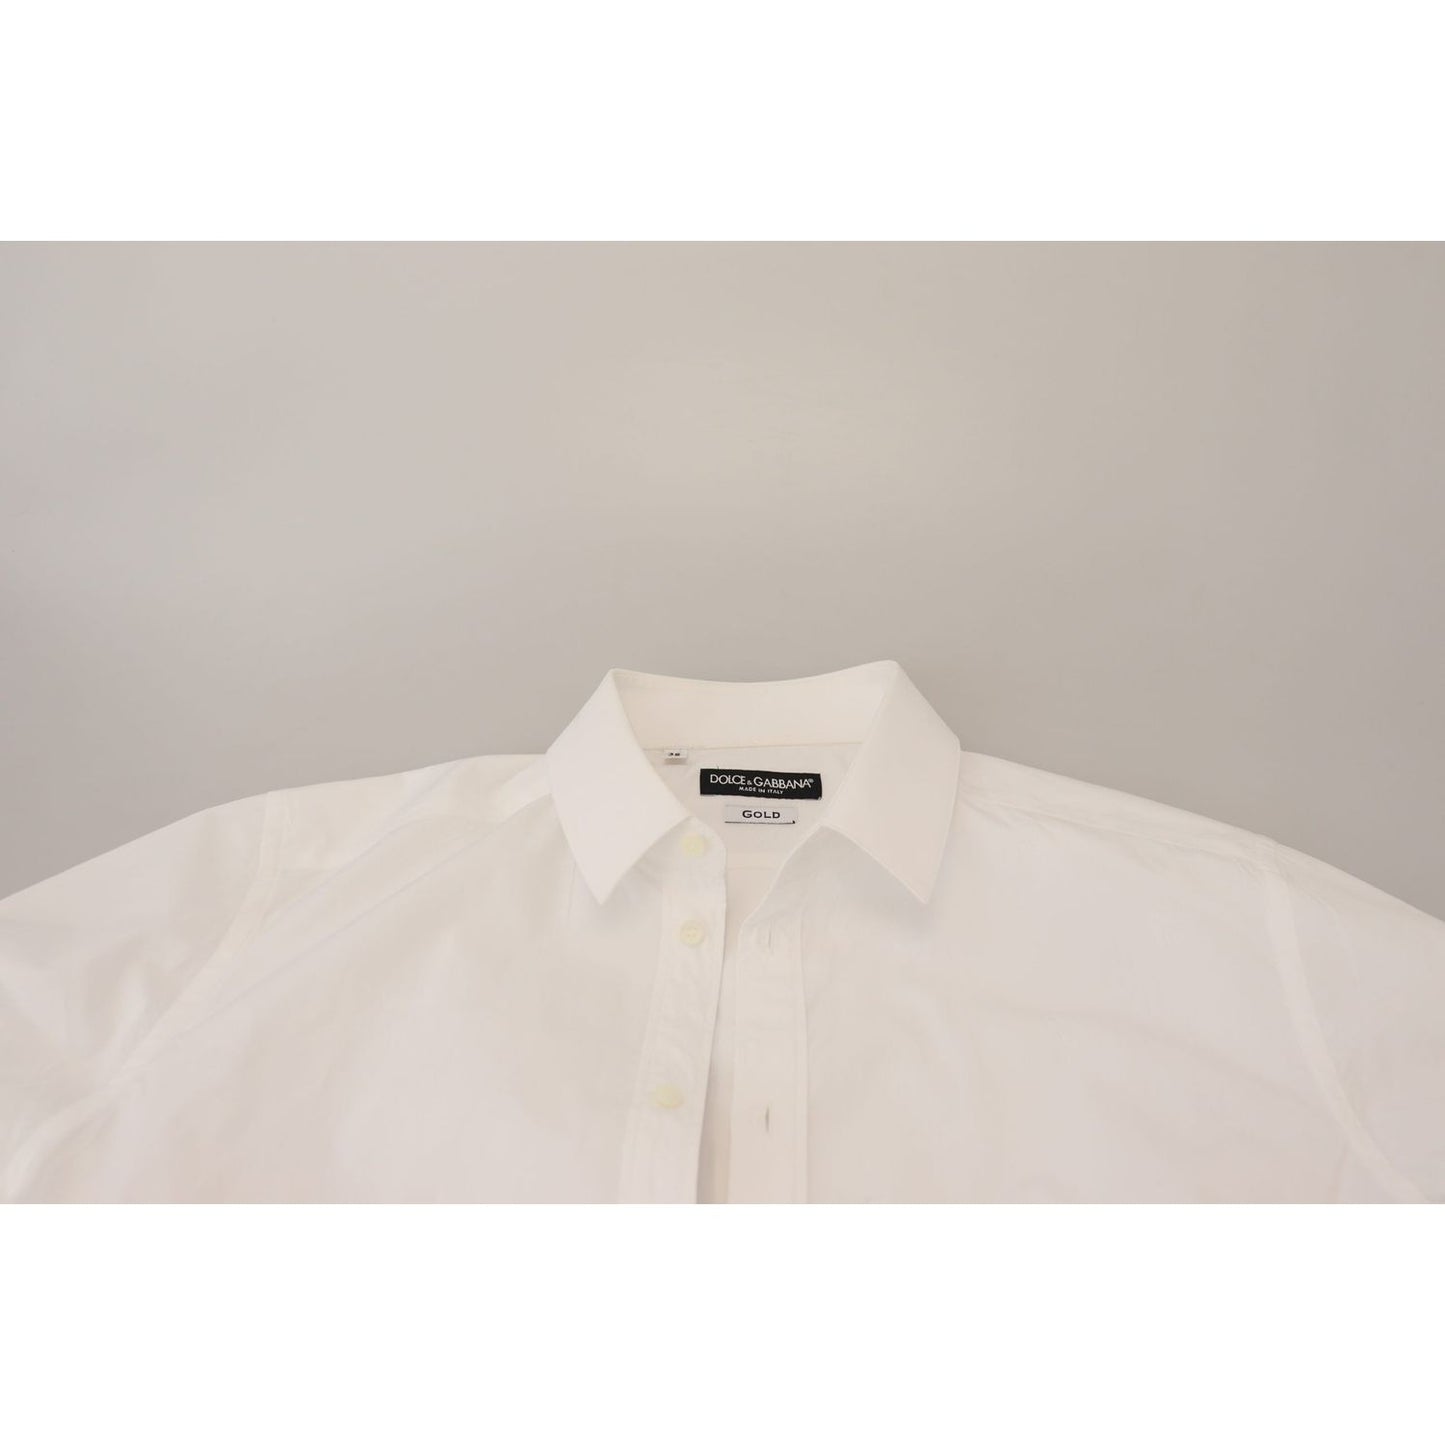 Dolce & Gabbana Elegant White Cotton Dress Shirt white-cotton-slim-fit-formal-dress-gold-shirt-1